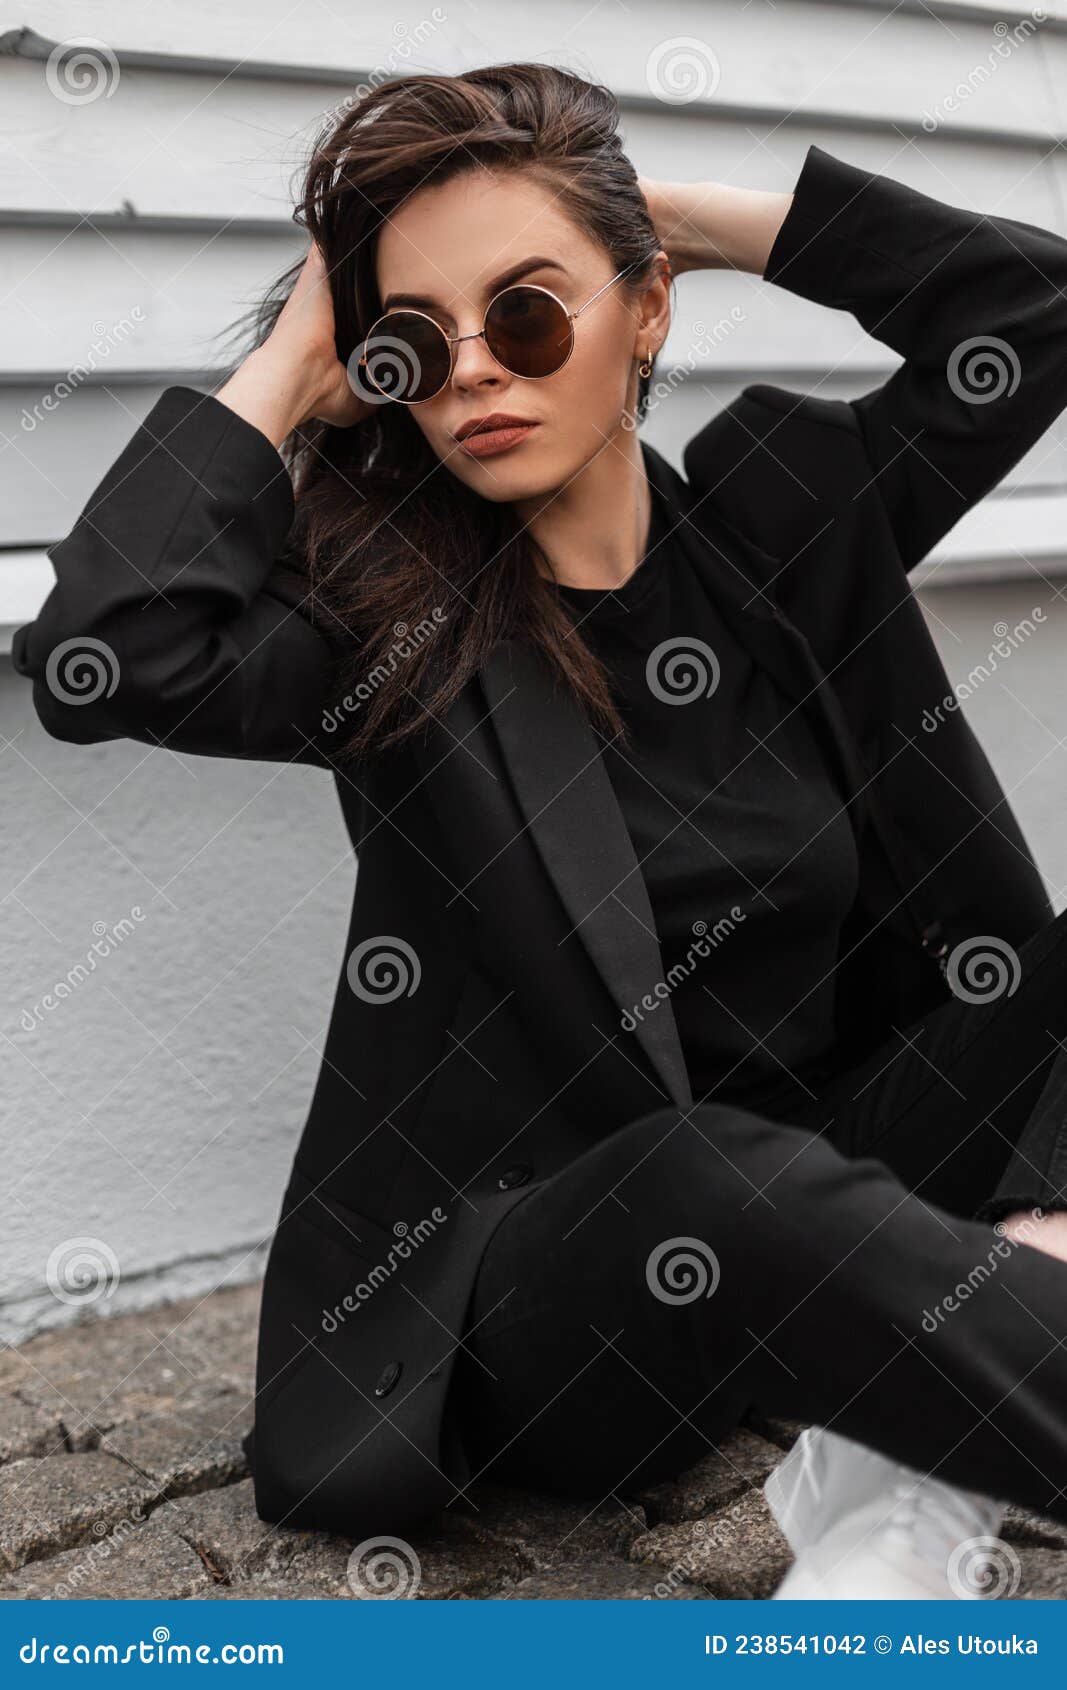 Moda Hermosa Mujer Joven En Gafas De Sol En Ropa Informal Negro De Moda Alisa Pelo Cerca De Edificio De Madera Vintage Foto de archivo - Imagen de piedra, vaqueros: 238541042